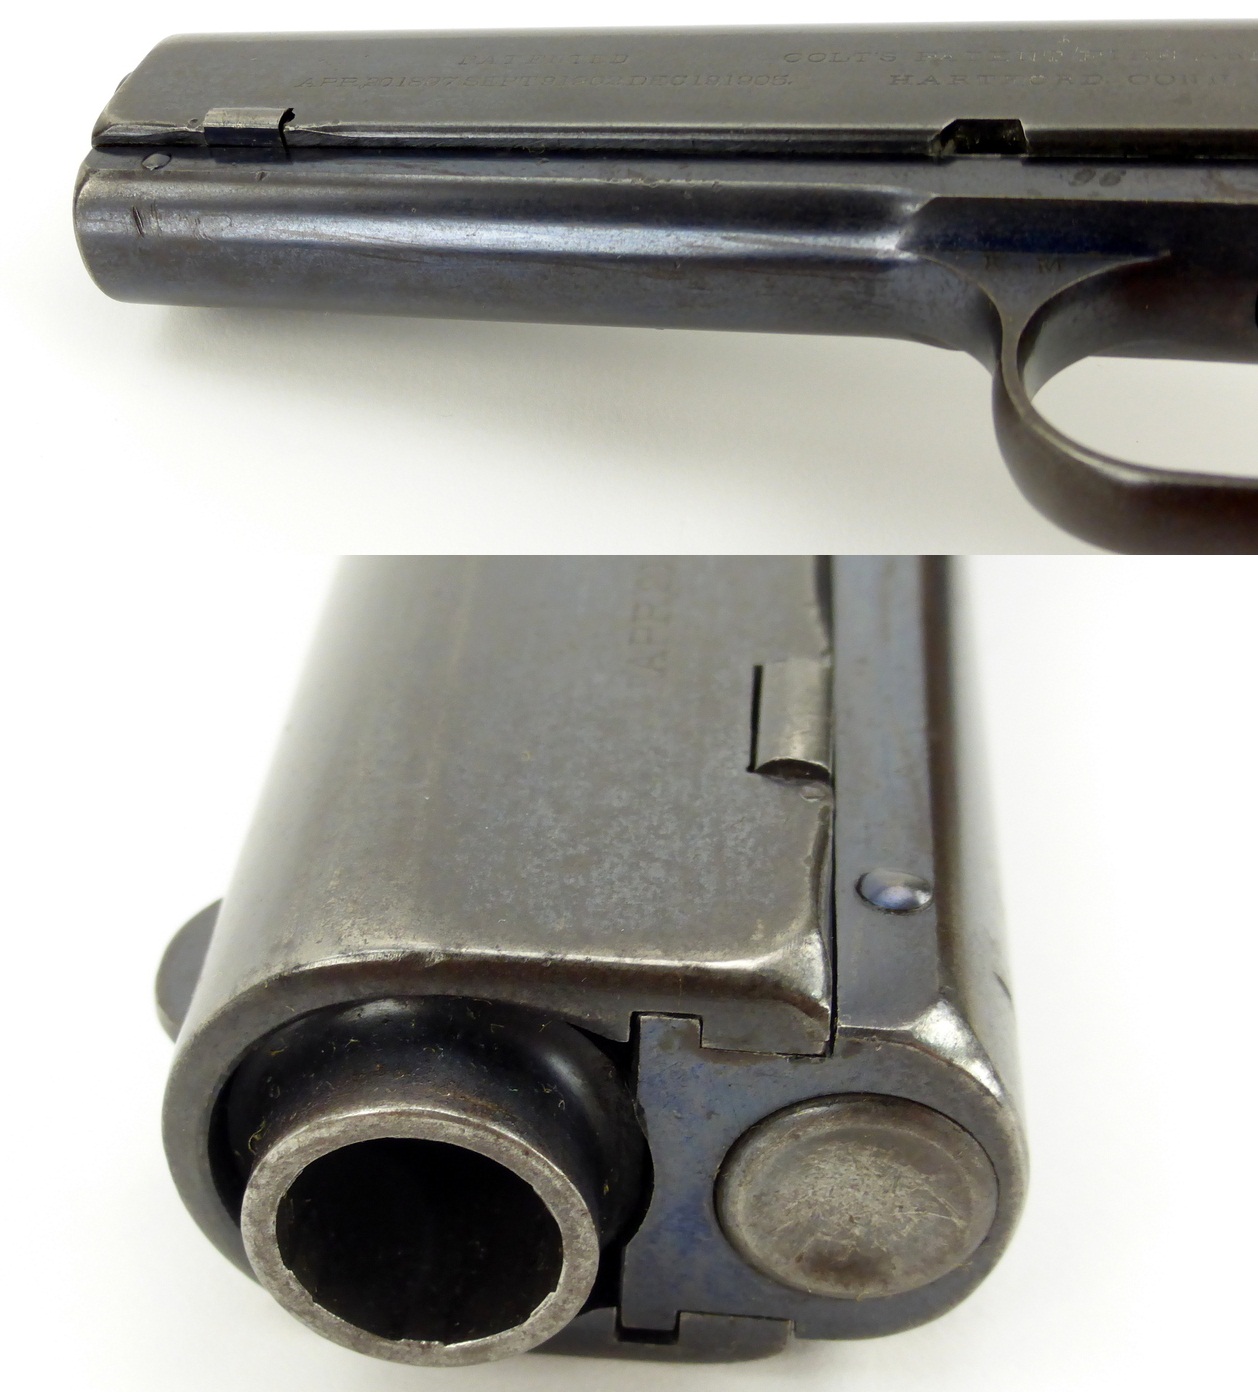  Colt Model 1907 .45 ACP